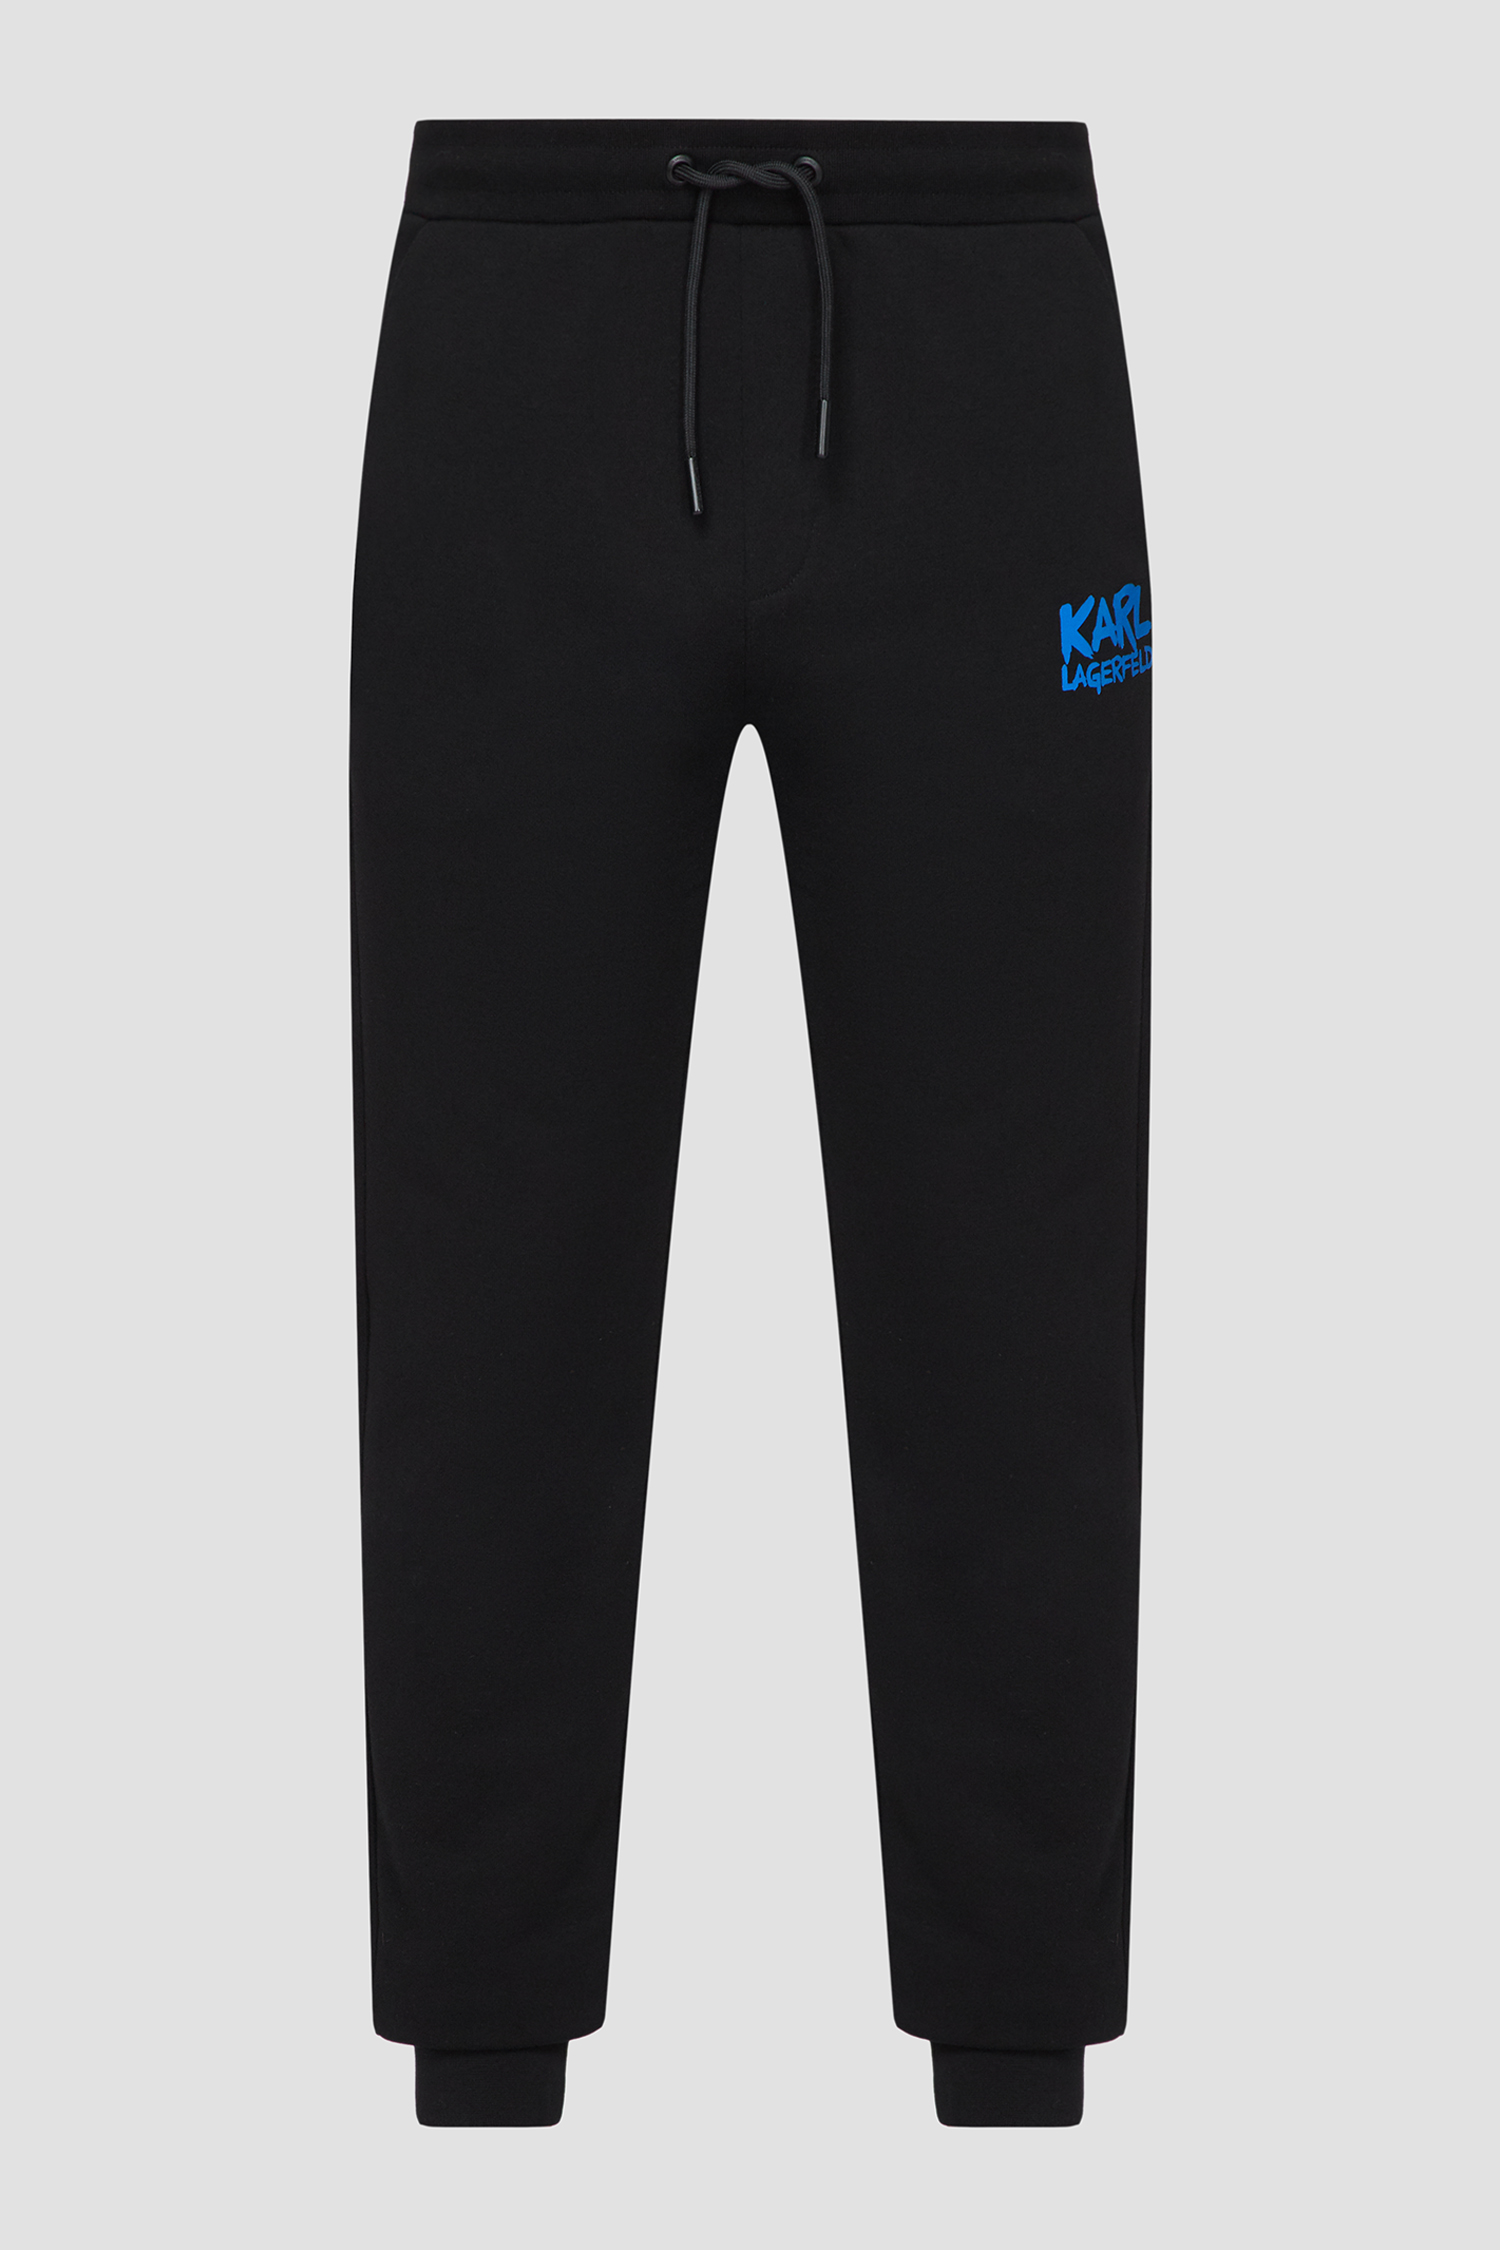 Мужские черные спортивные брюки Karl Lagerfeld 531900.705081;996